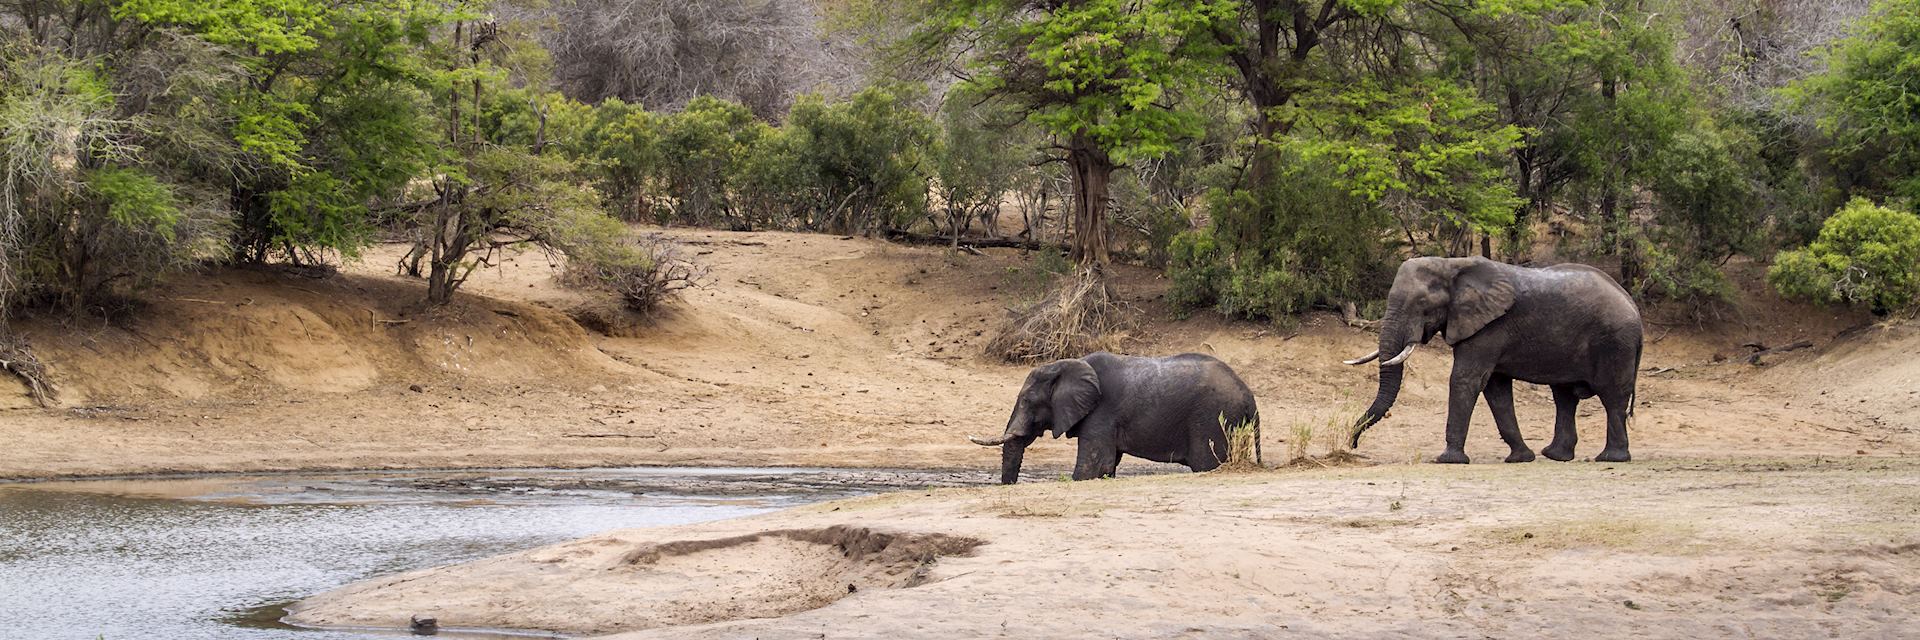 Elephant in Kruger National Park 